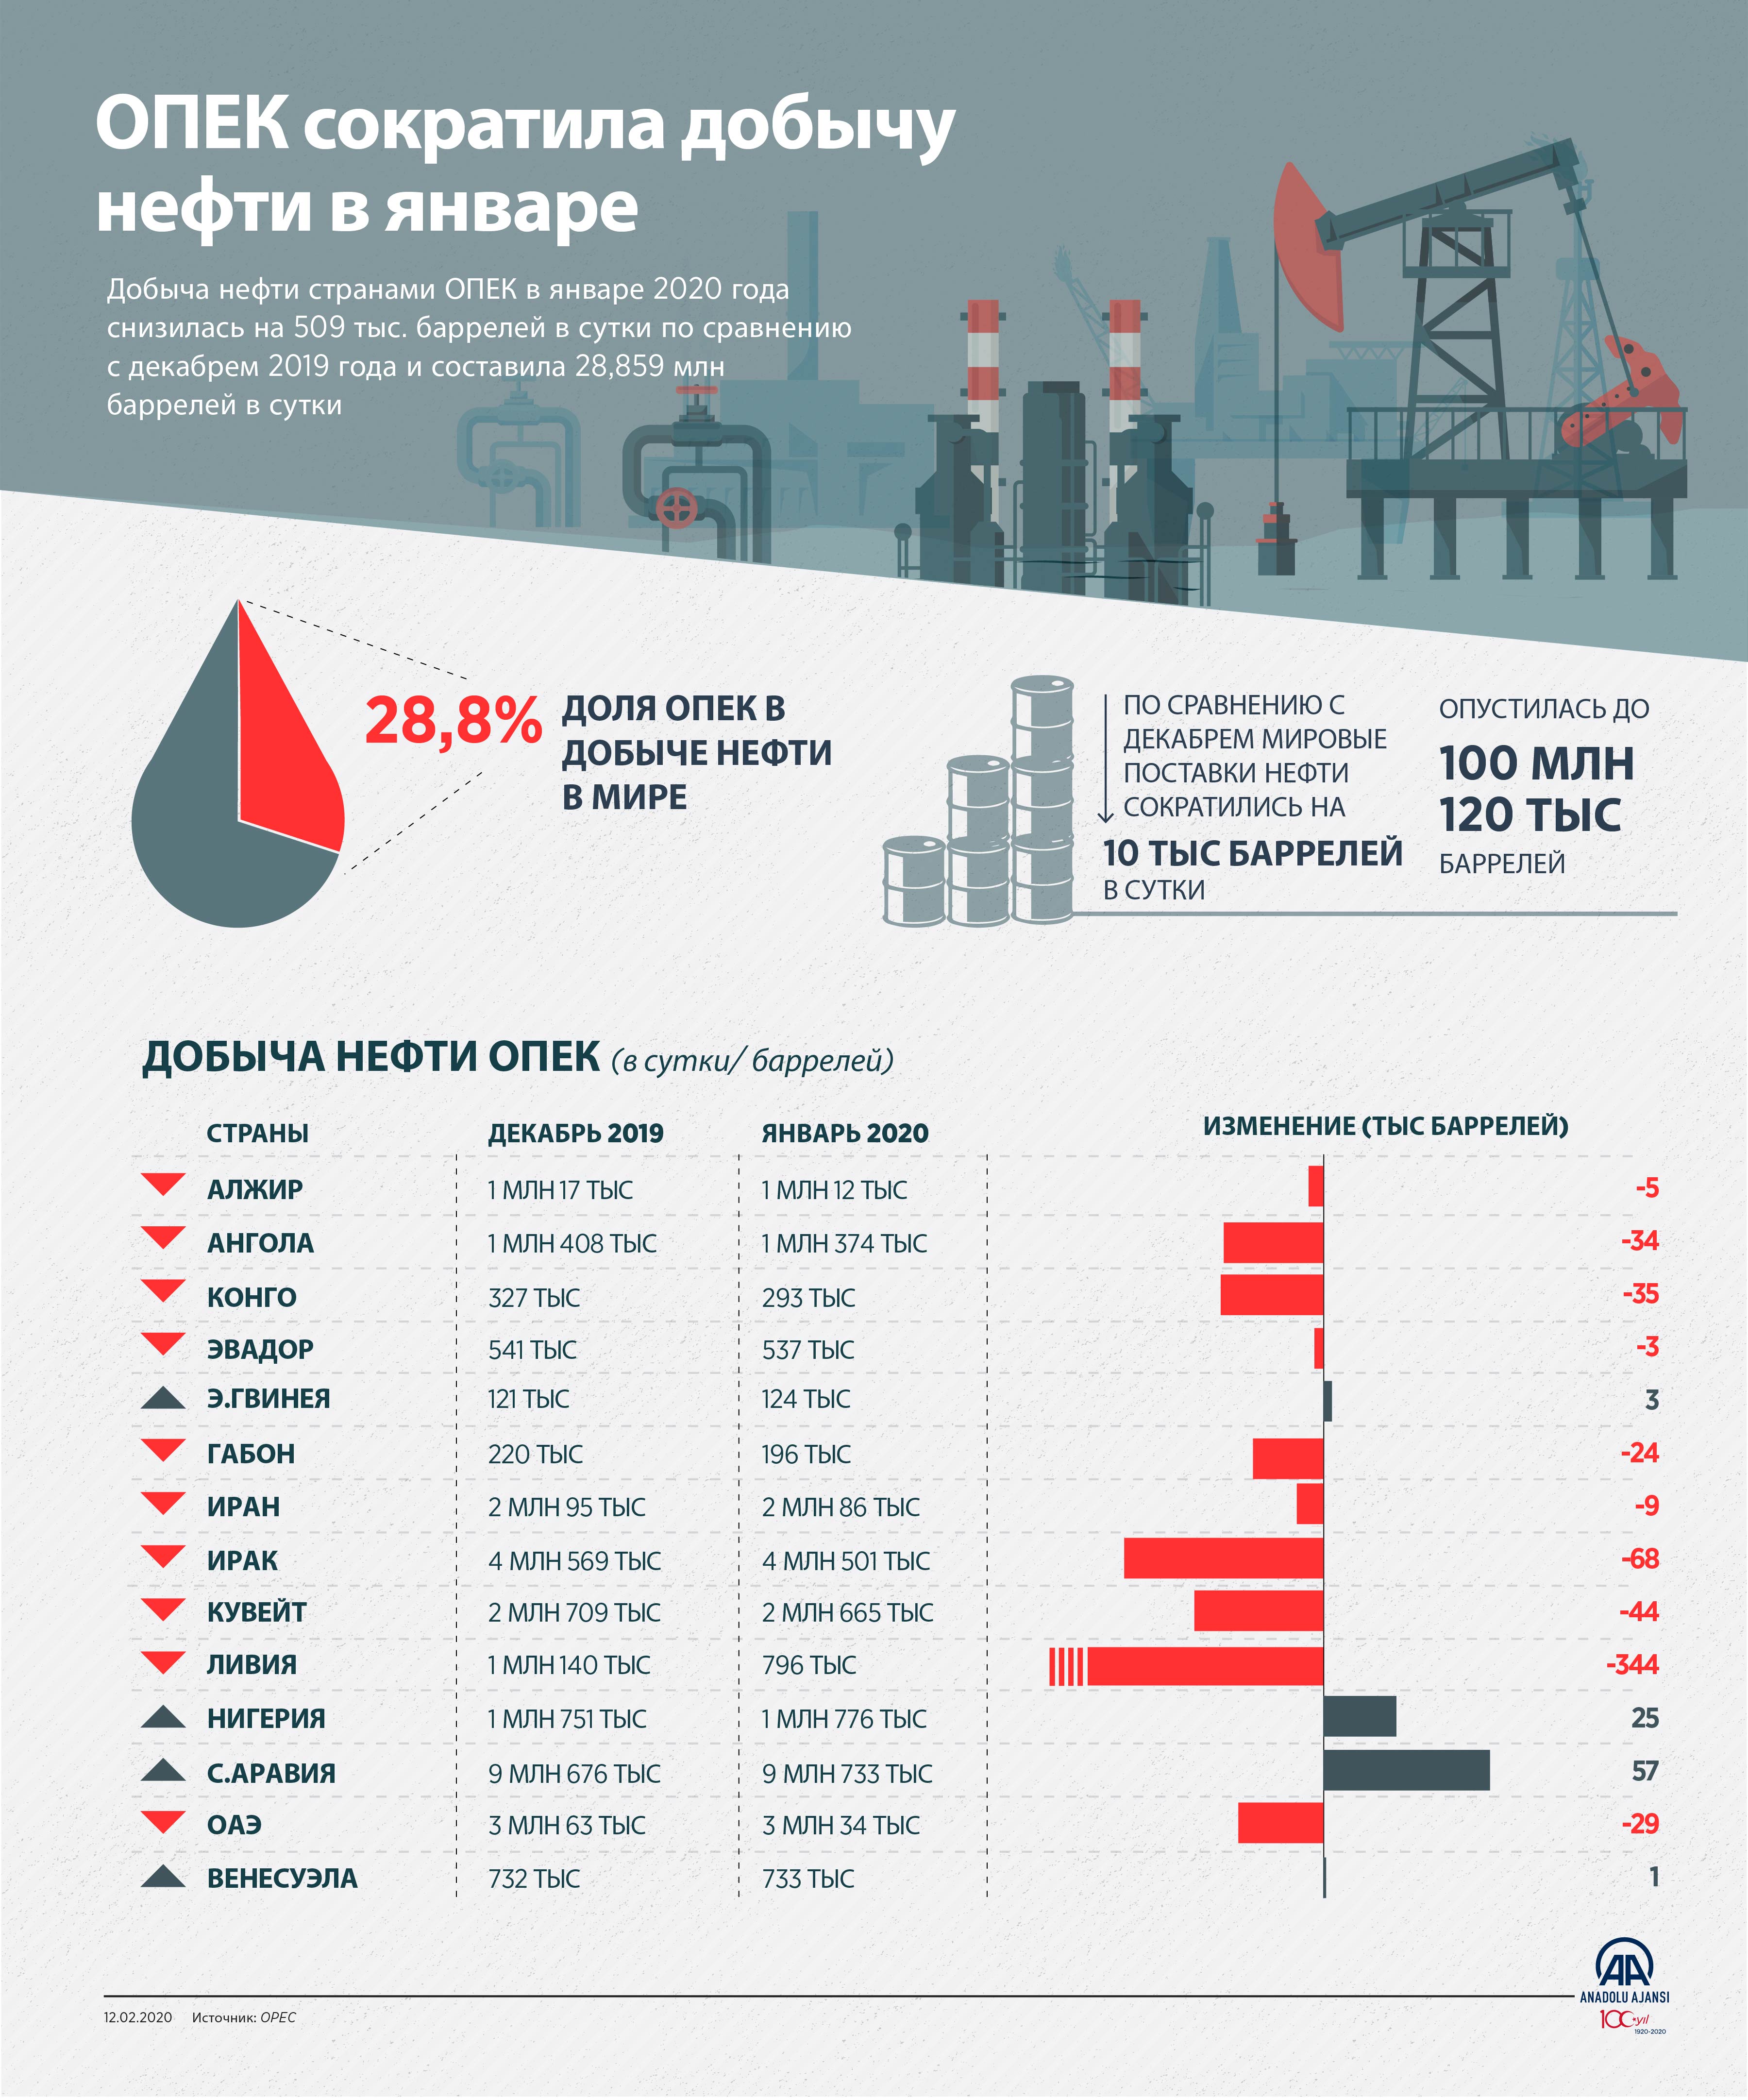 Годовая добыча нефти в странах